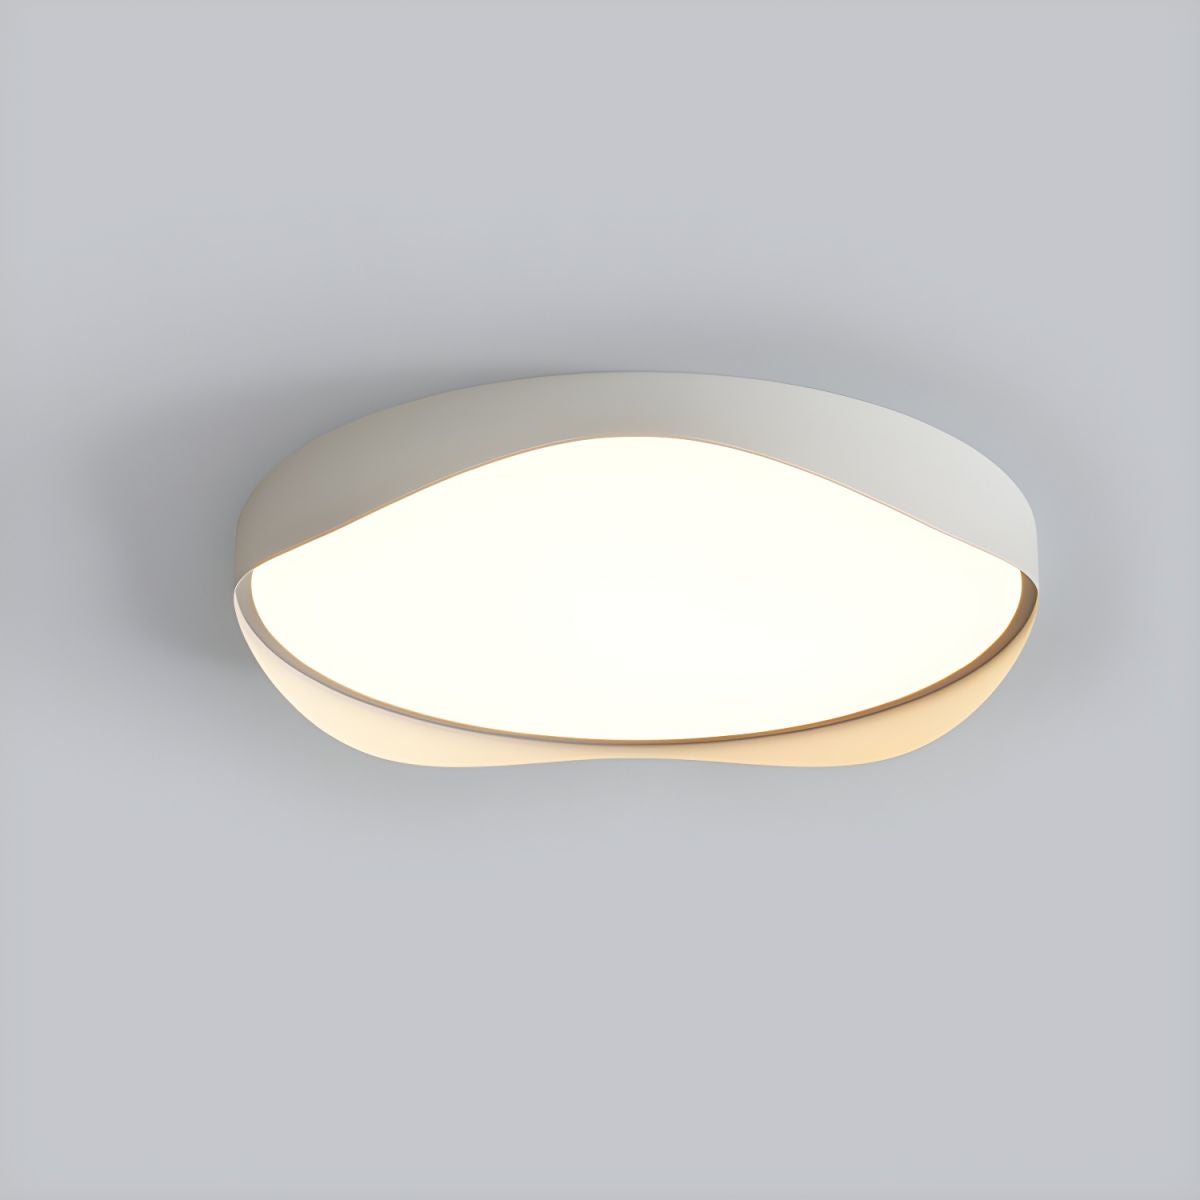 Modern Geometric White Ceiling Light